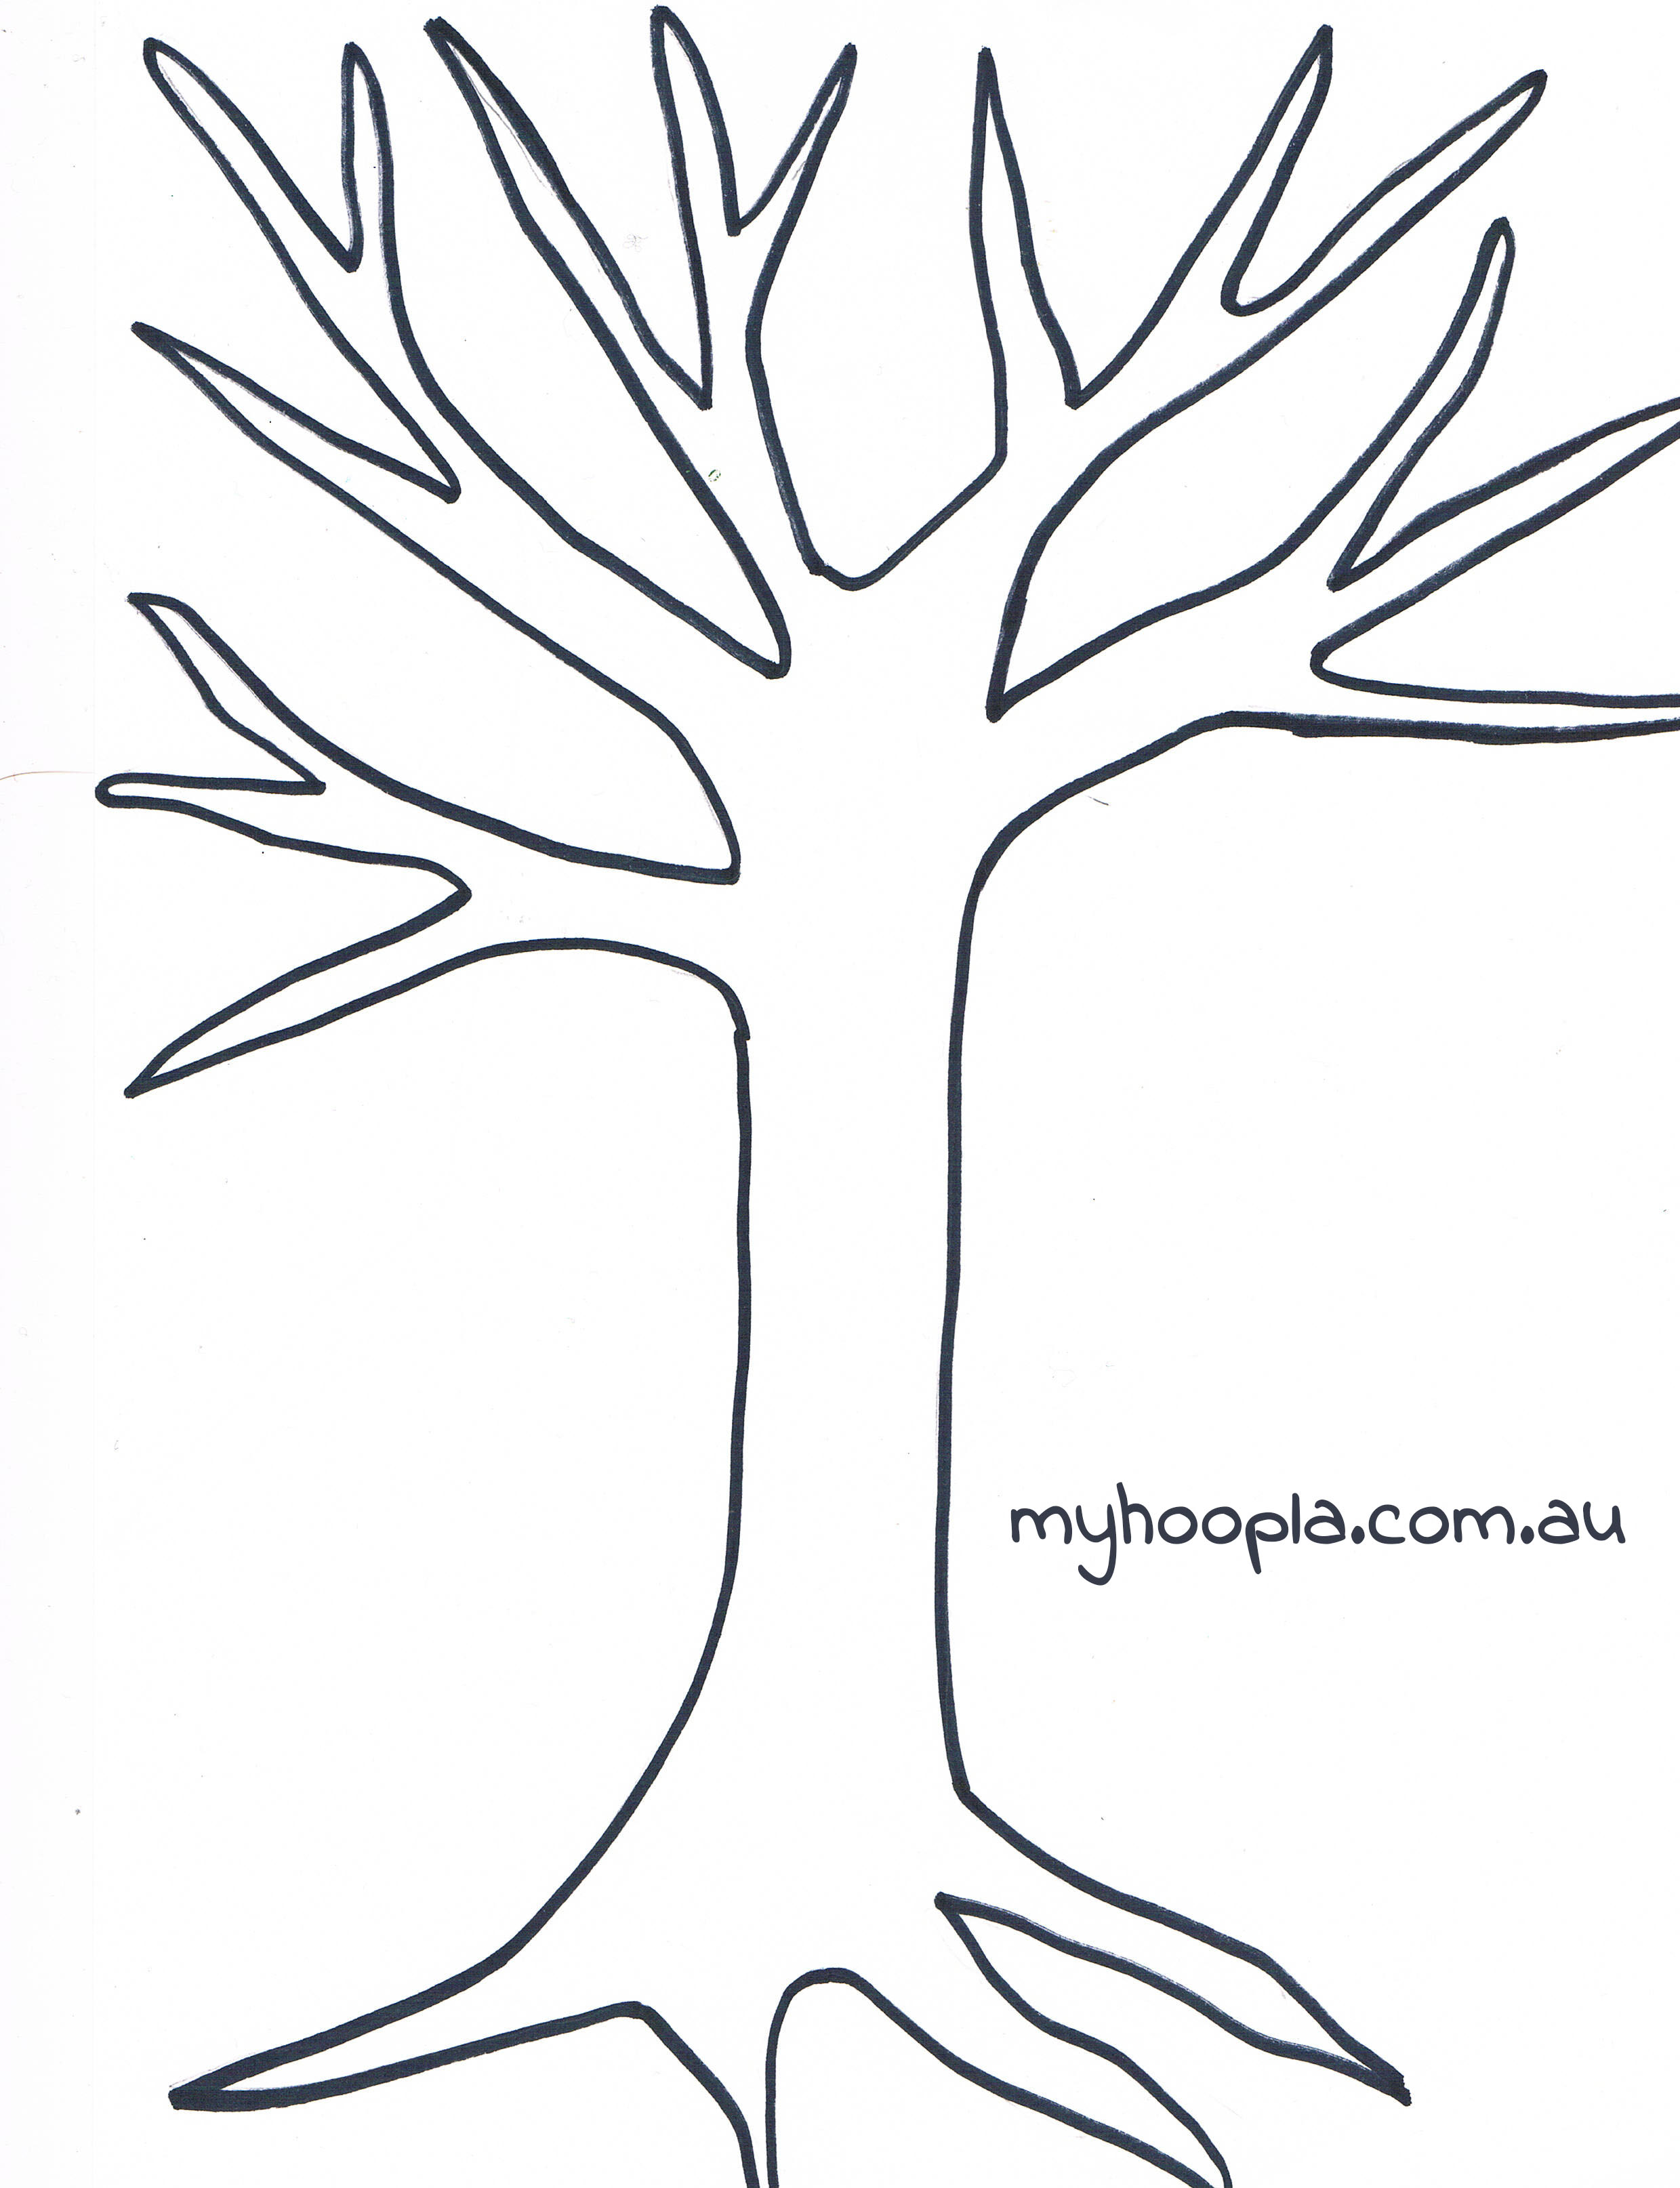 Kandinsky's Trees | myhoopla